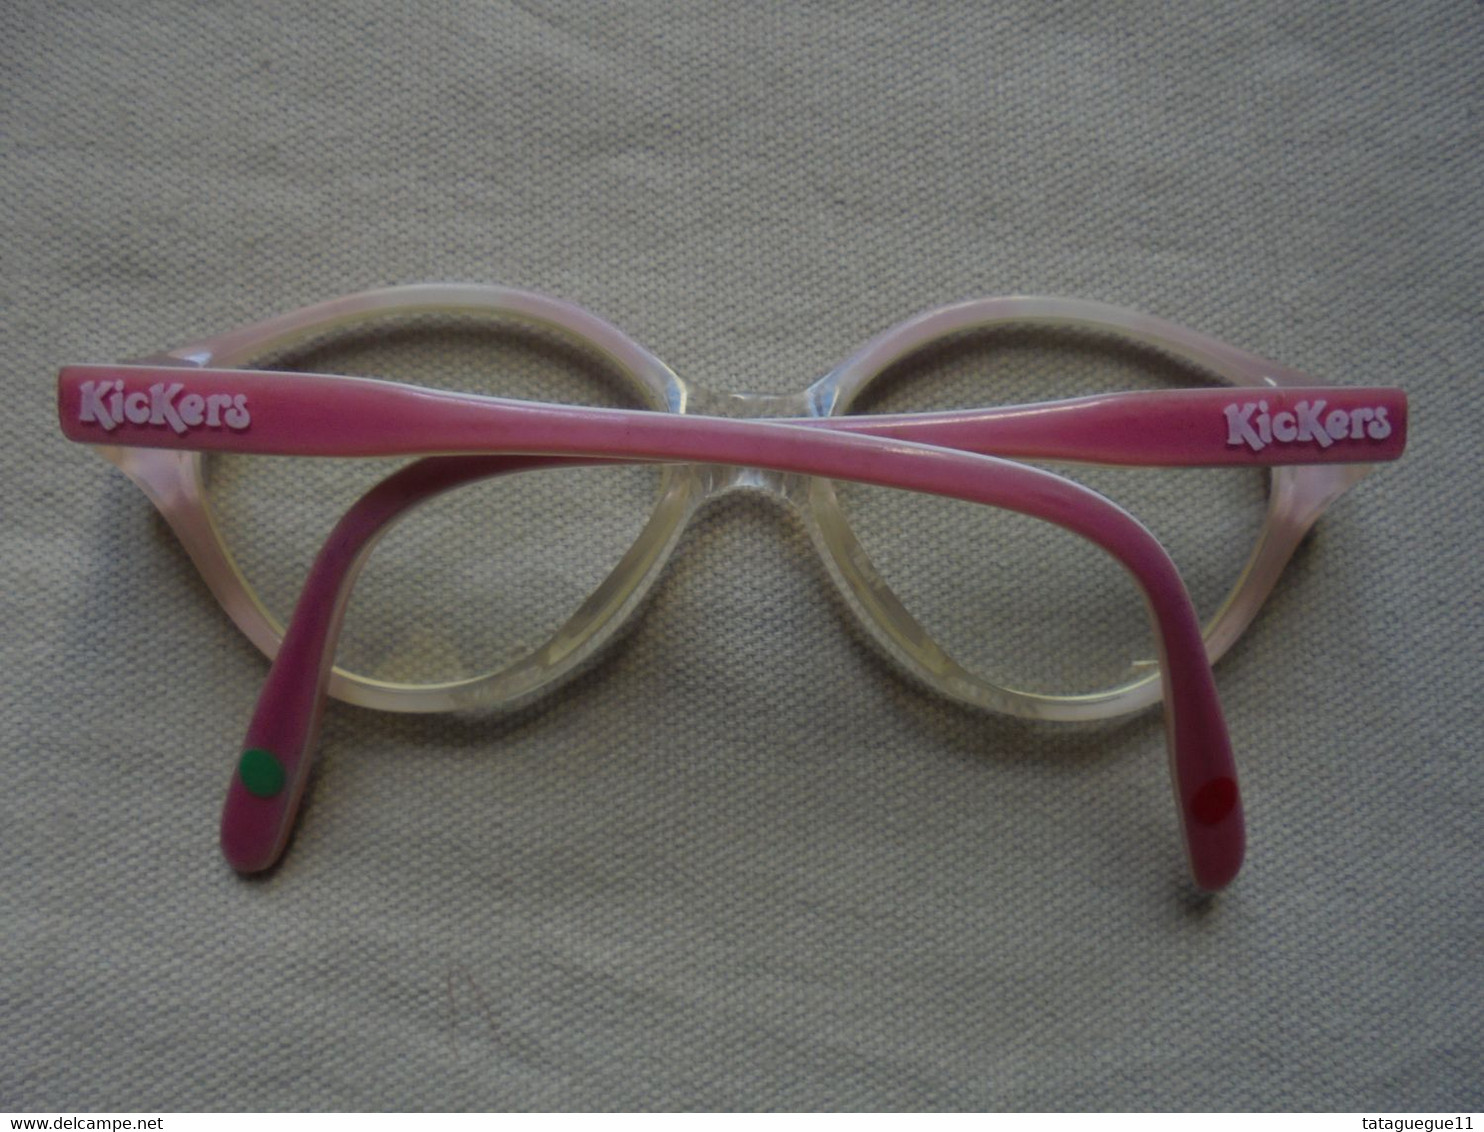 Vintage - Paire de lunettes de vue Kickers/Frame France pour enfant/fillette